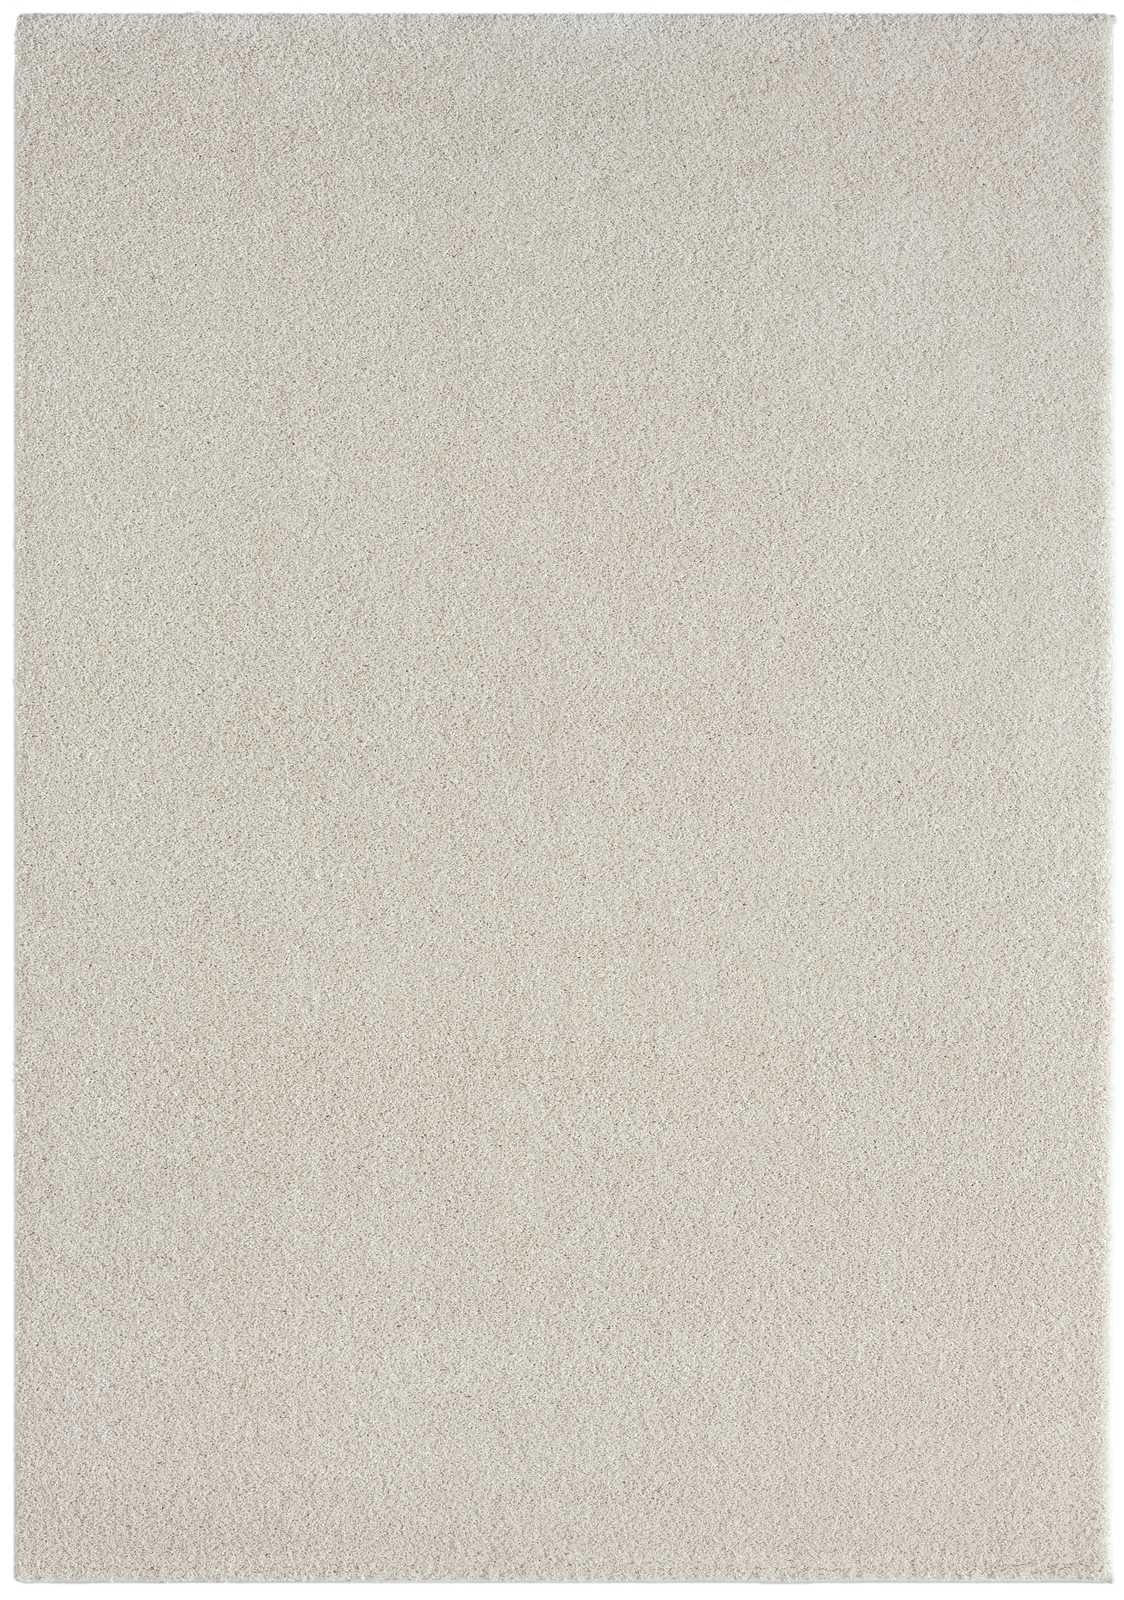             Cream Short Pile Rug - 290 x 200 cm
        